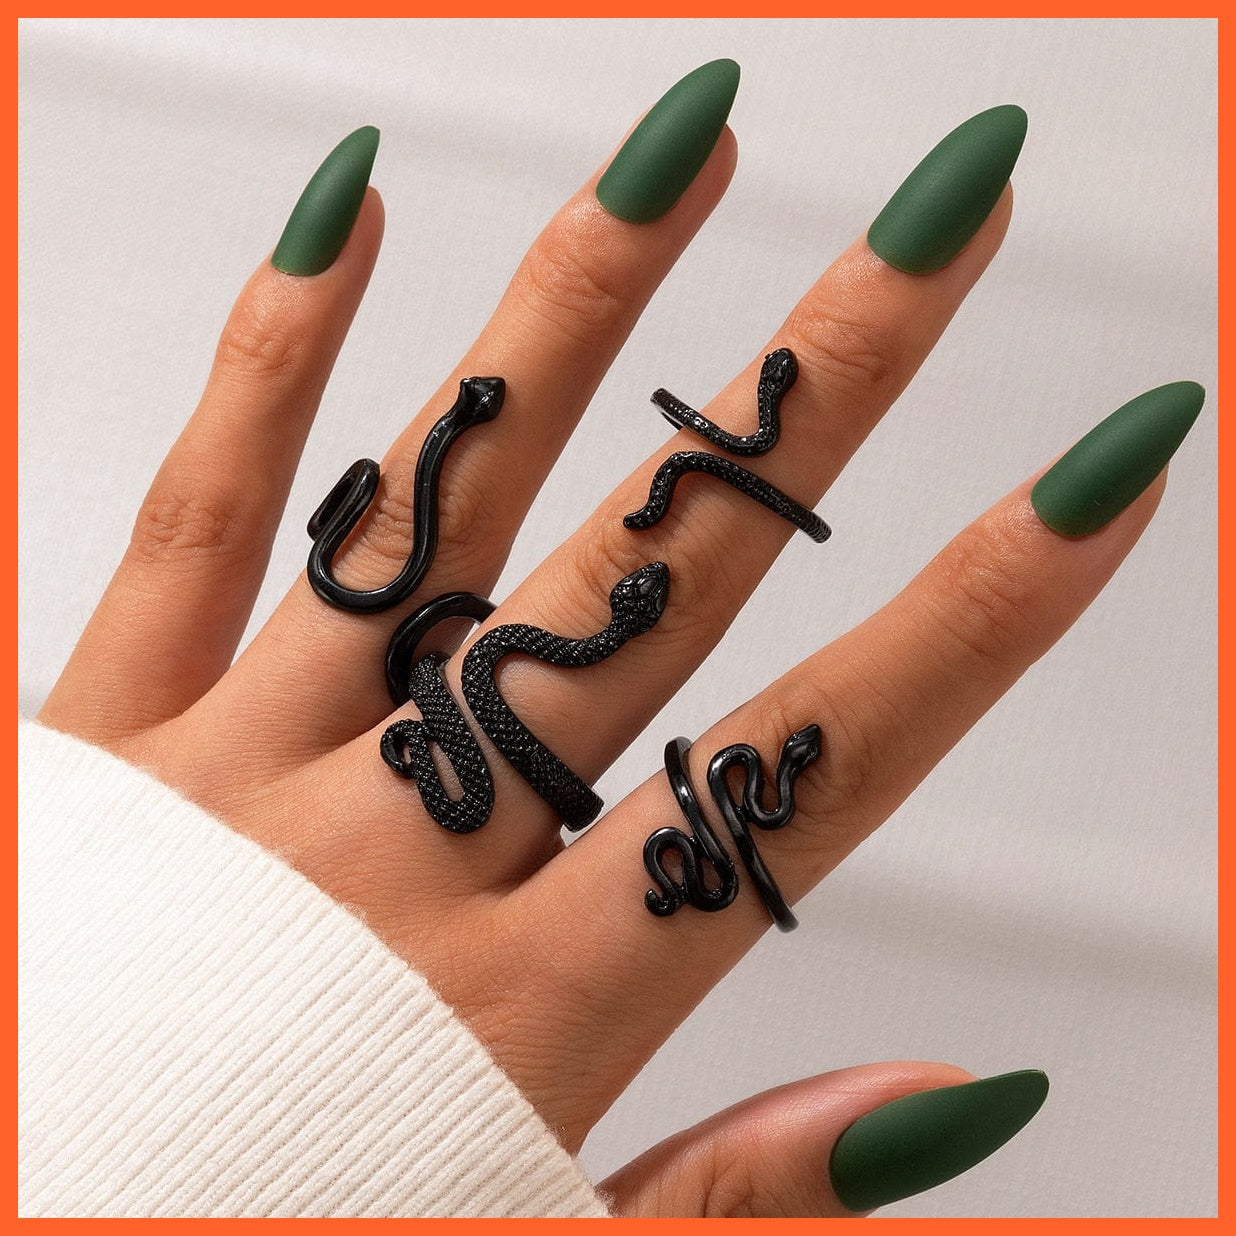 whatagift.uk Snake Ring 2 / Resizable Open Adjustable Finger Black Snake Ring Set For Women